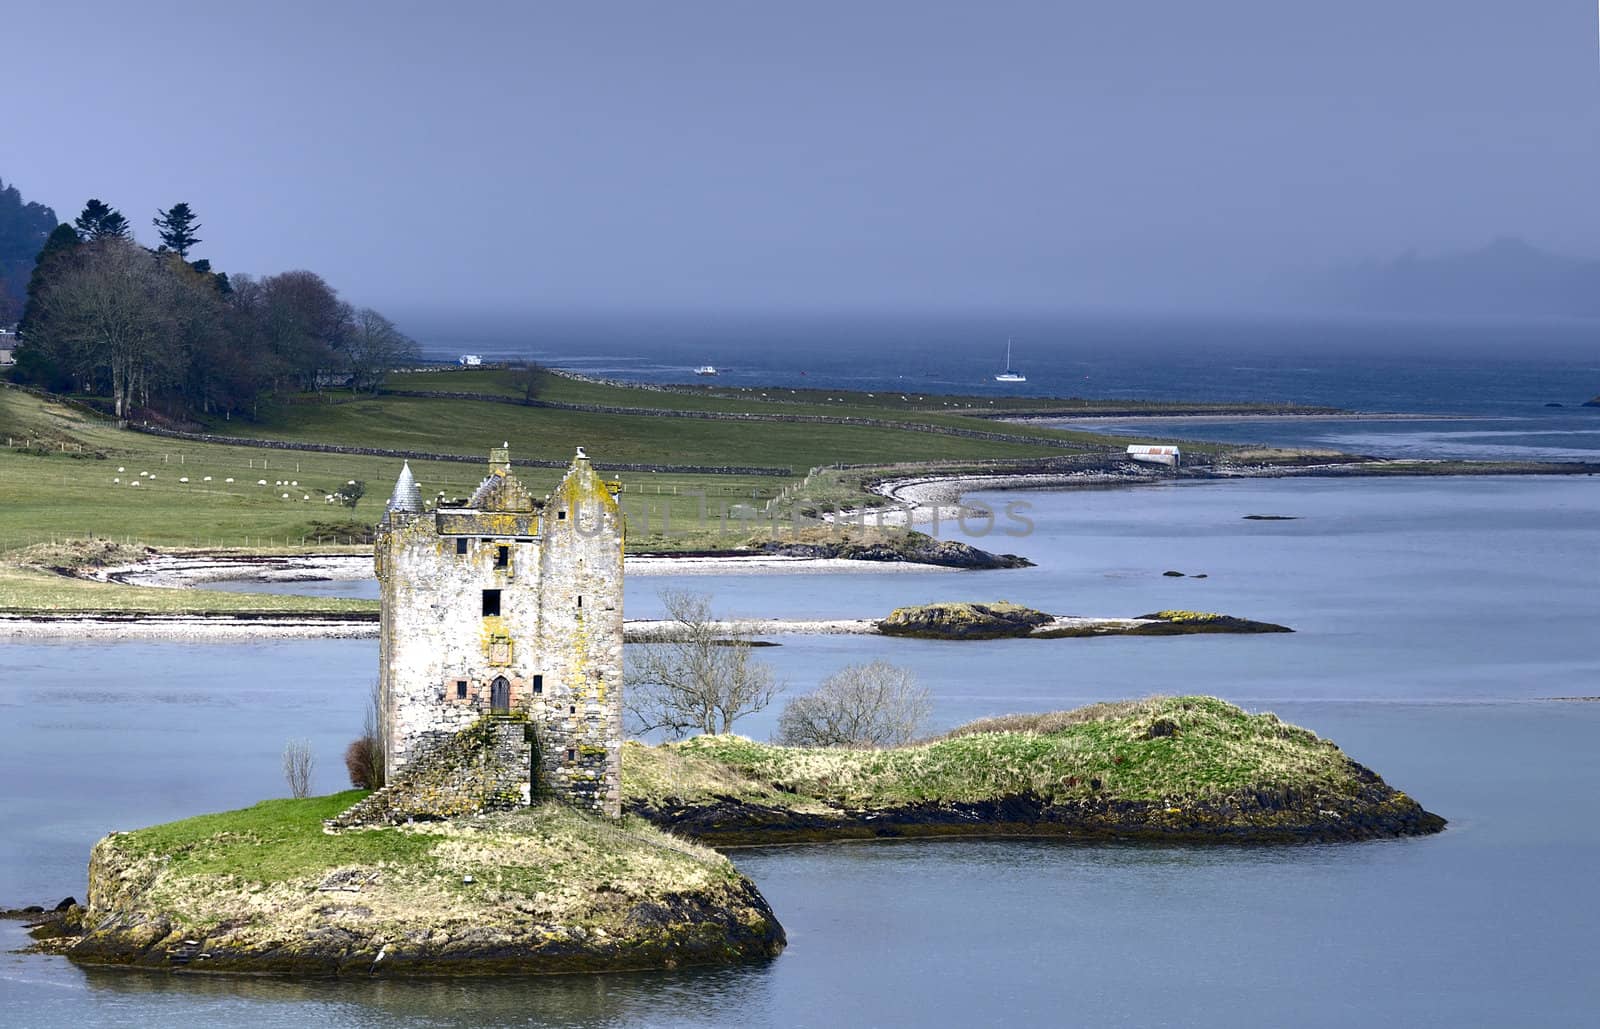 Castle Stalker in Scotland ona remote island in a loch